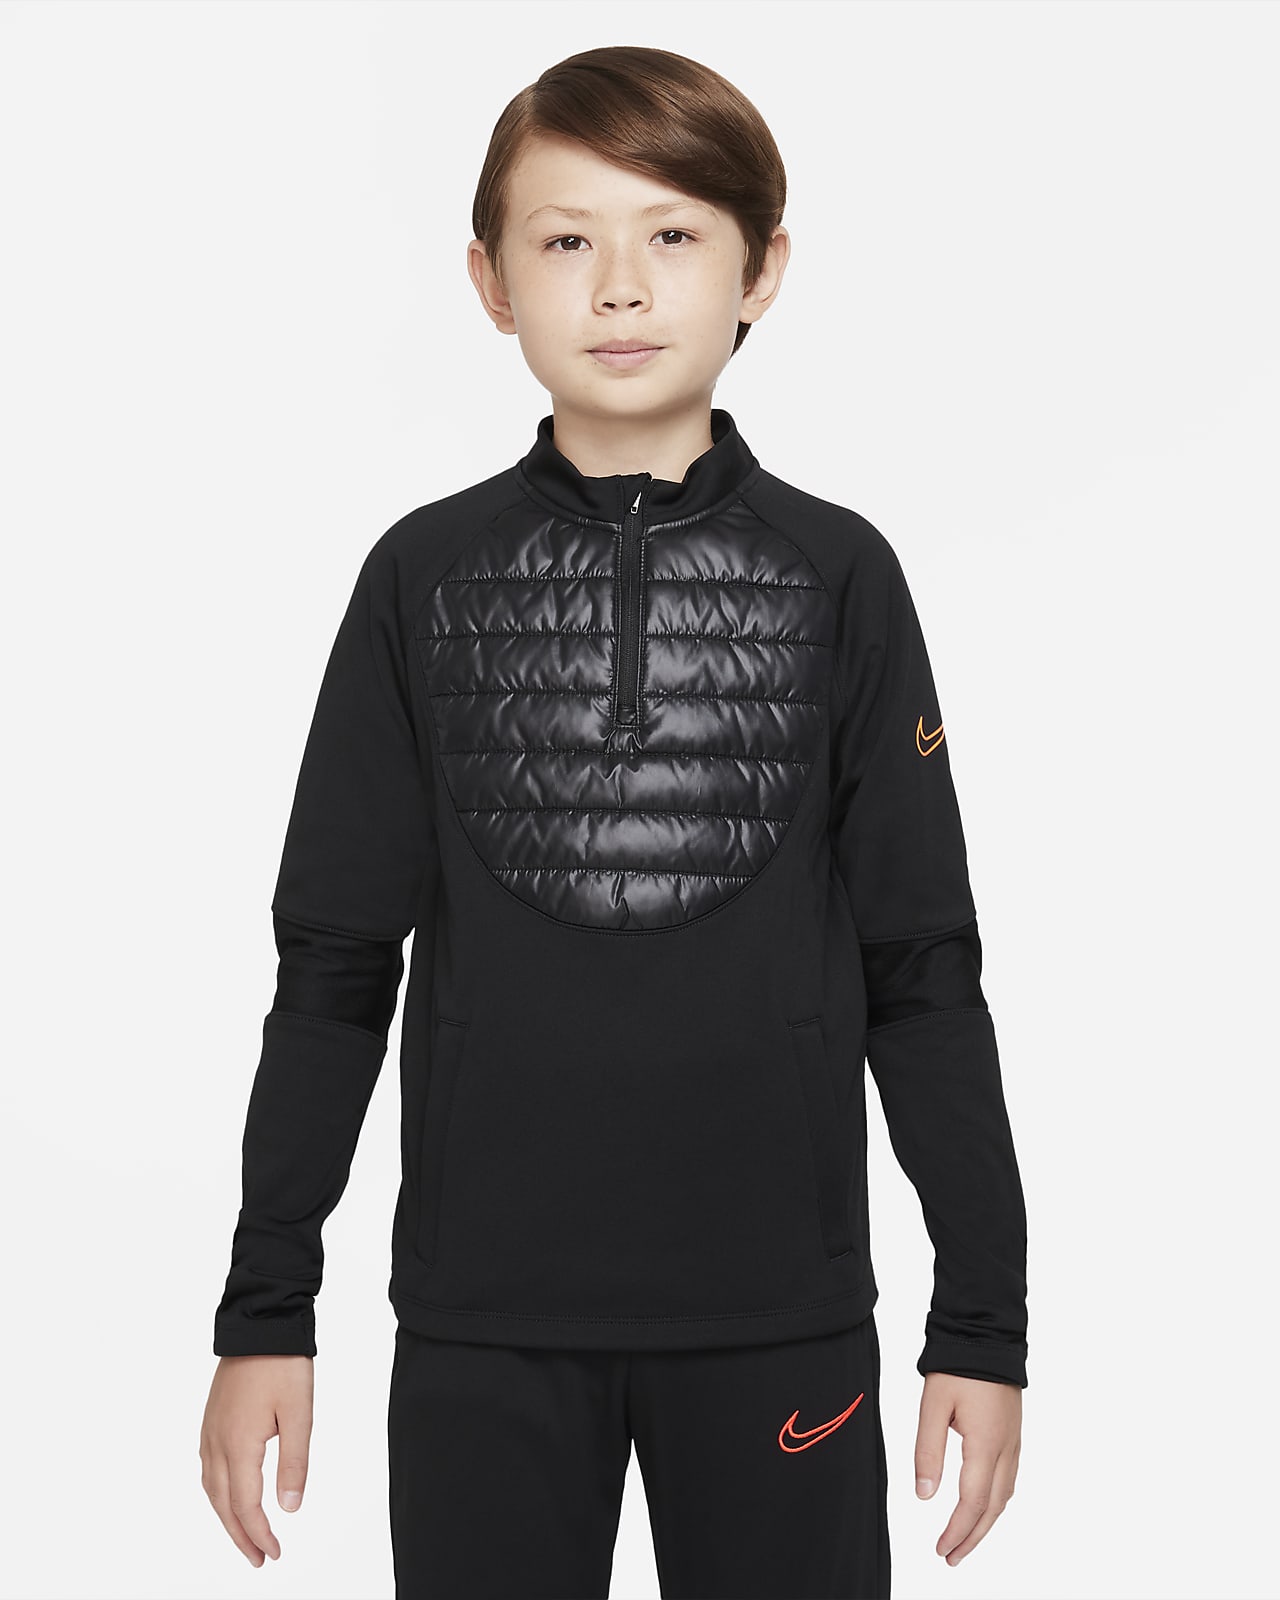 Ποδοσφαιρική μπλούζα προπόνησης Nike Therma-FIT Academy Winter Warrior για μεγάλα παιδιά